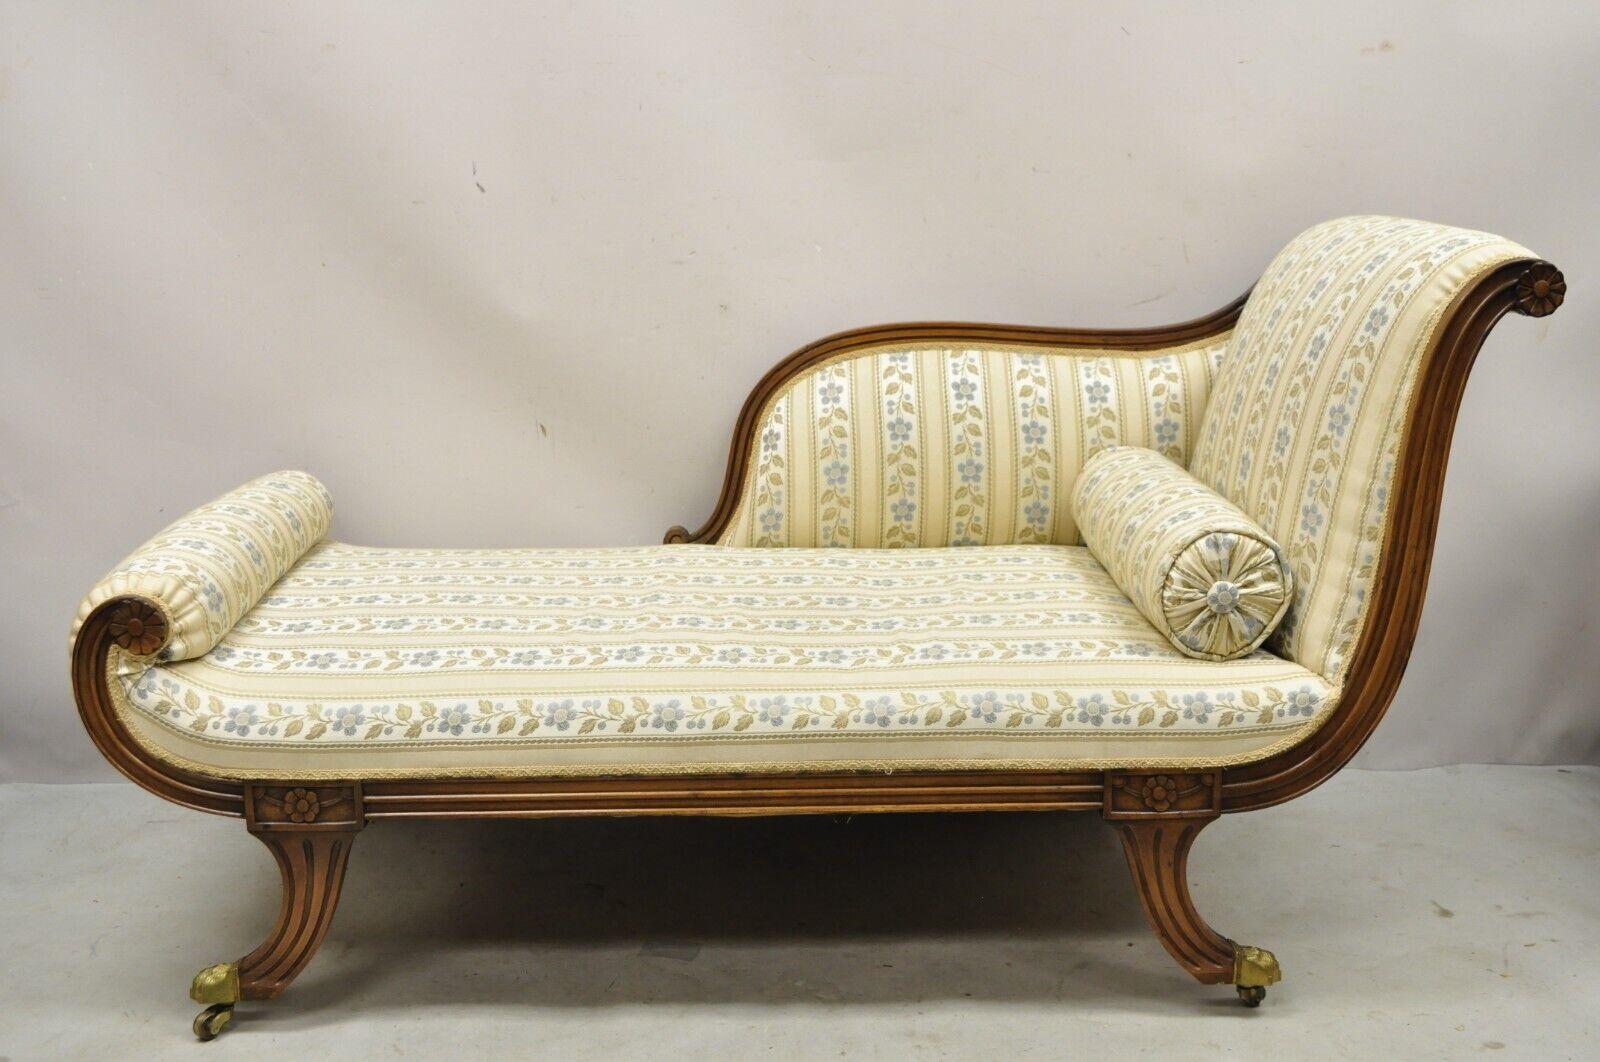 Vintage Regency Style geschnitzt Mahagoni Säbel Bein Chaise Lounge Sofa Recamier. Rahmen aus geschnitztem Mahagoniholz, Füße mit Messingkappen auf Rollen, blau und gold gestreifte Polsterung, formschöne Säbelbeine, sehr schöner Vintage-Artikel,